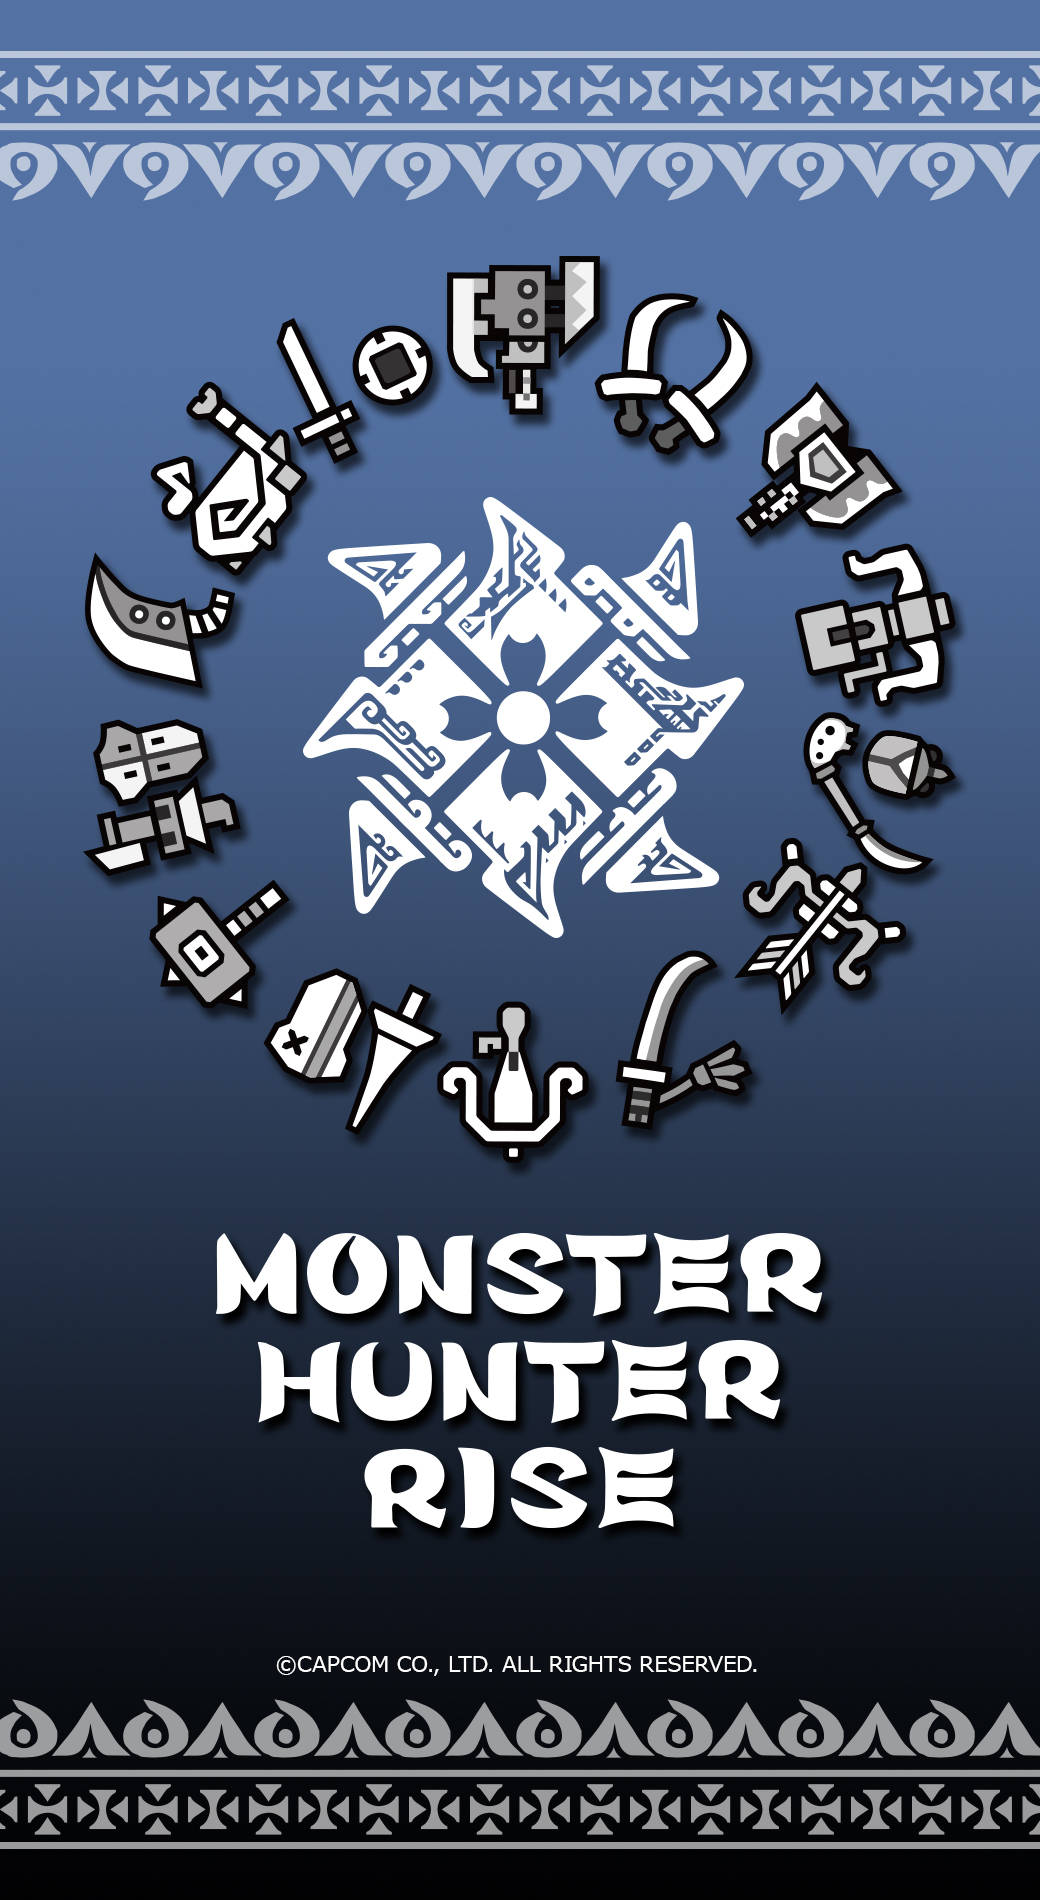 Vorstellungdes Monster Hunter Phones - Untersuchen Sie Ihre Beute Mit Immersiven Visuellen Eindrücken. Wallpaper